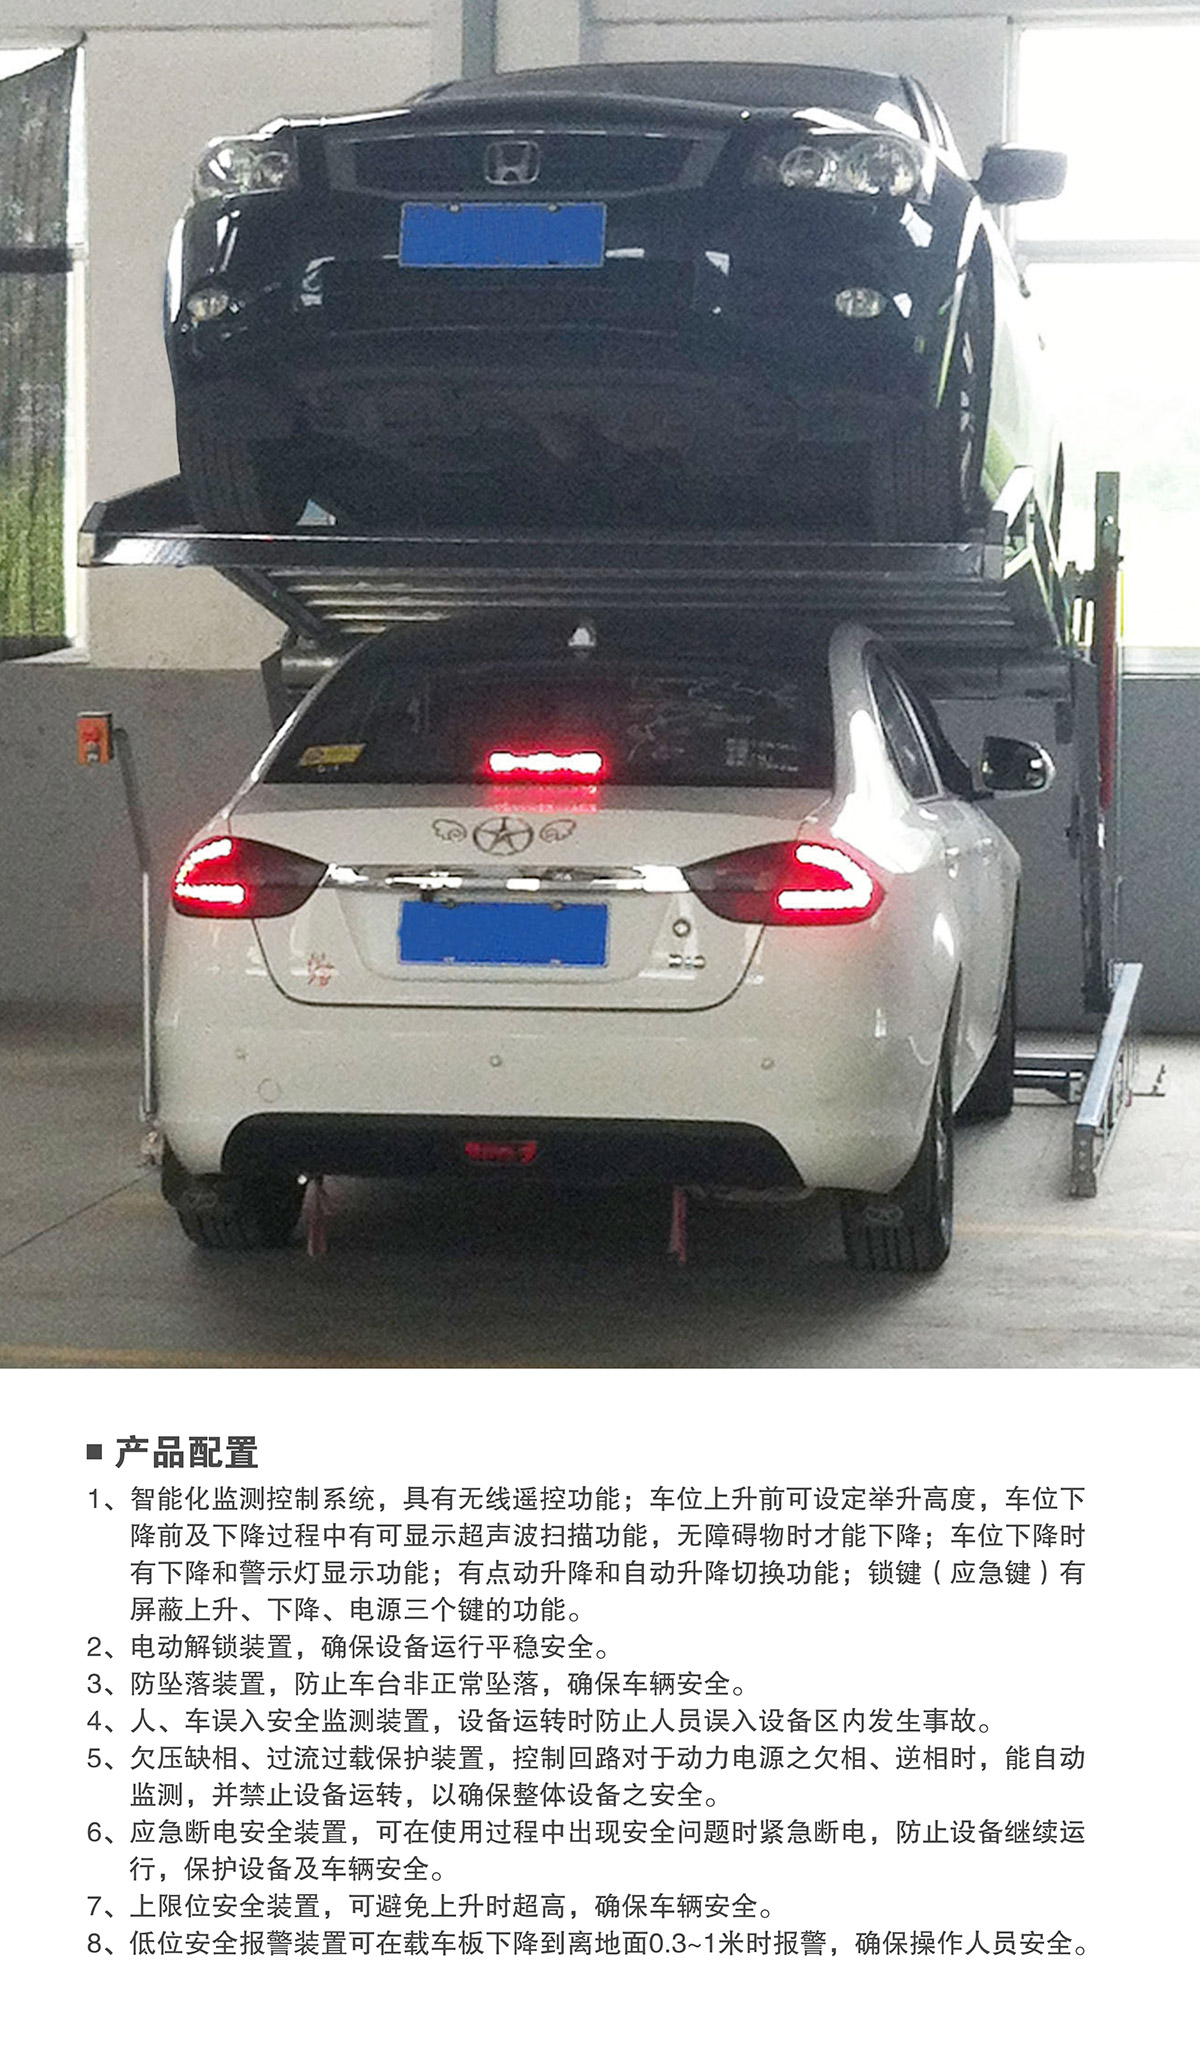 贵州俯仰式简易升降立体停车设备产品配置.jpg